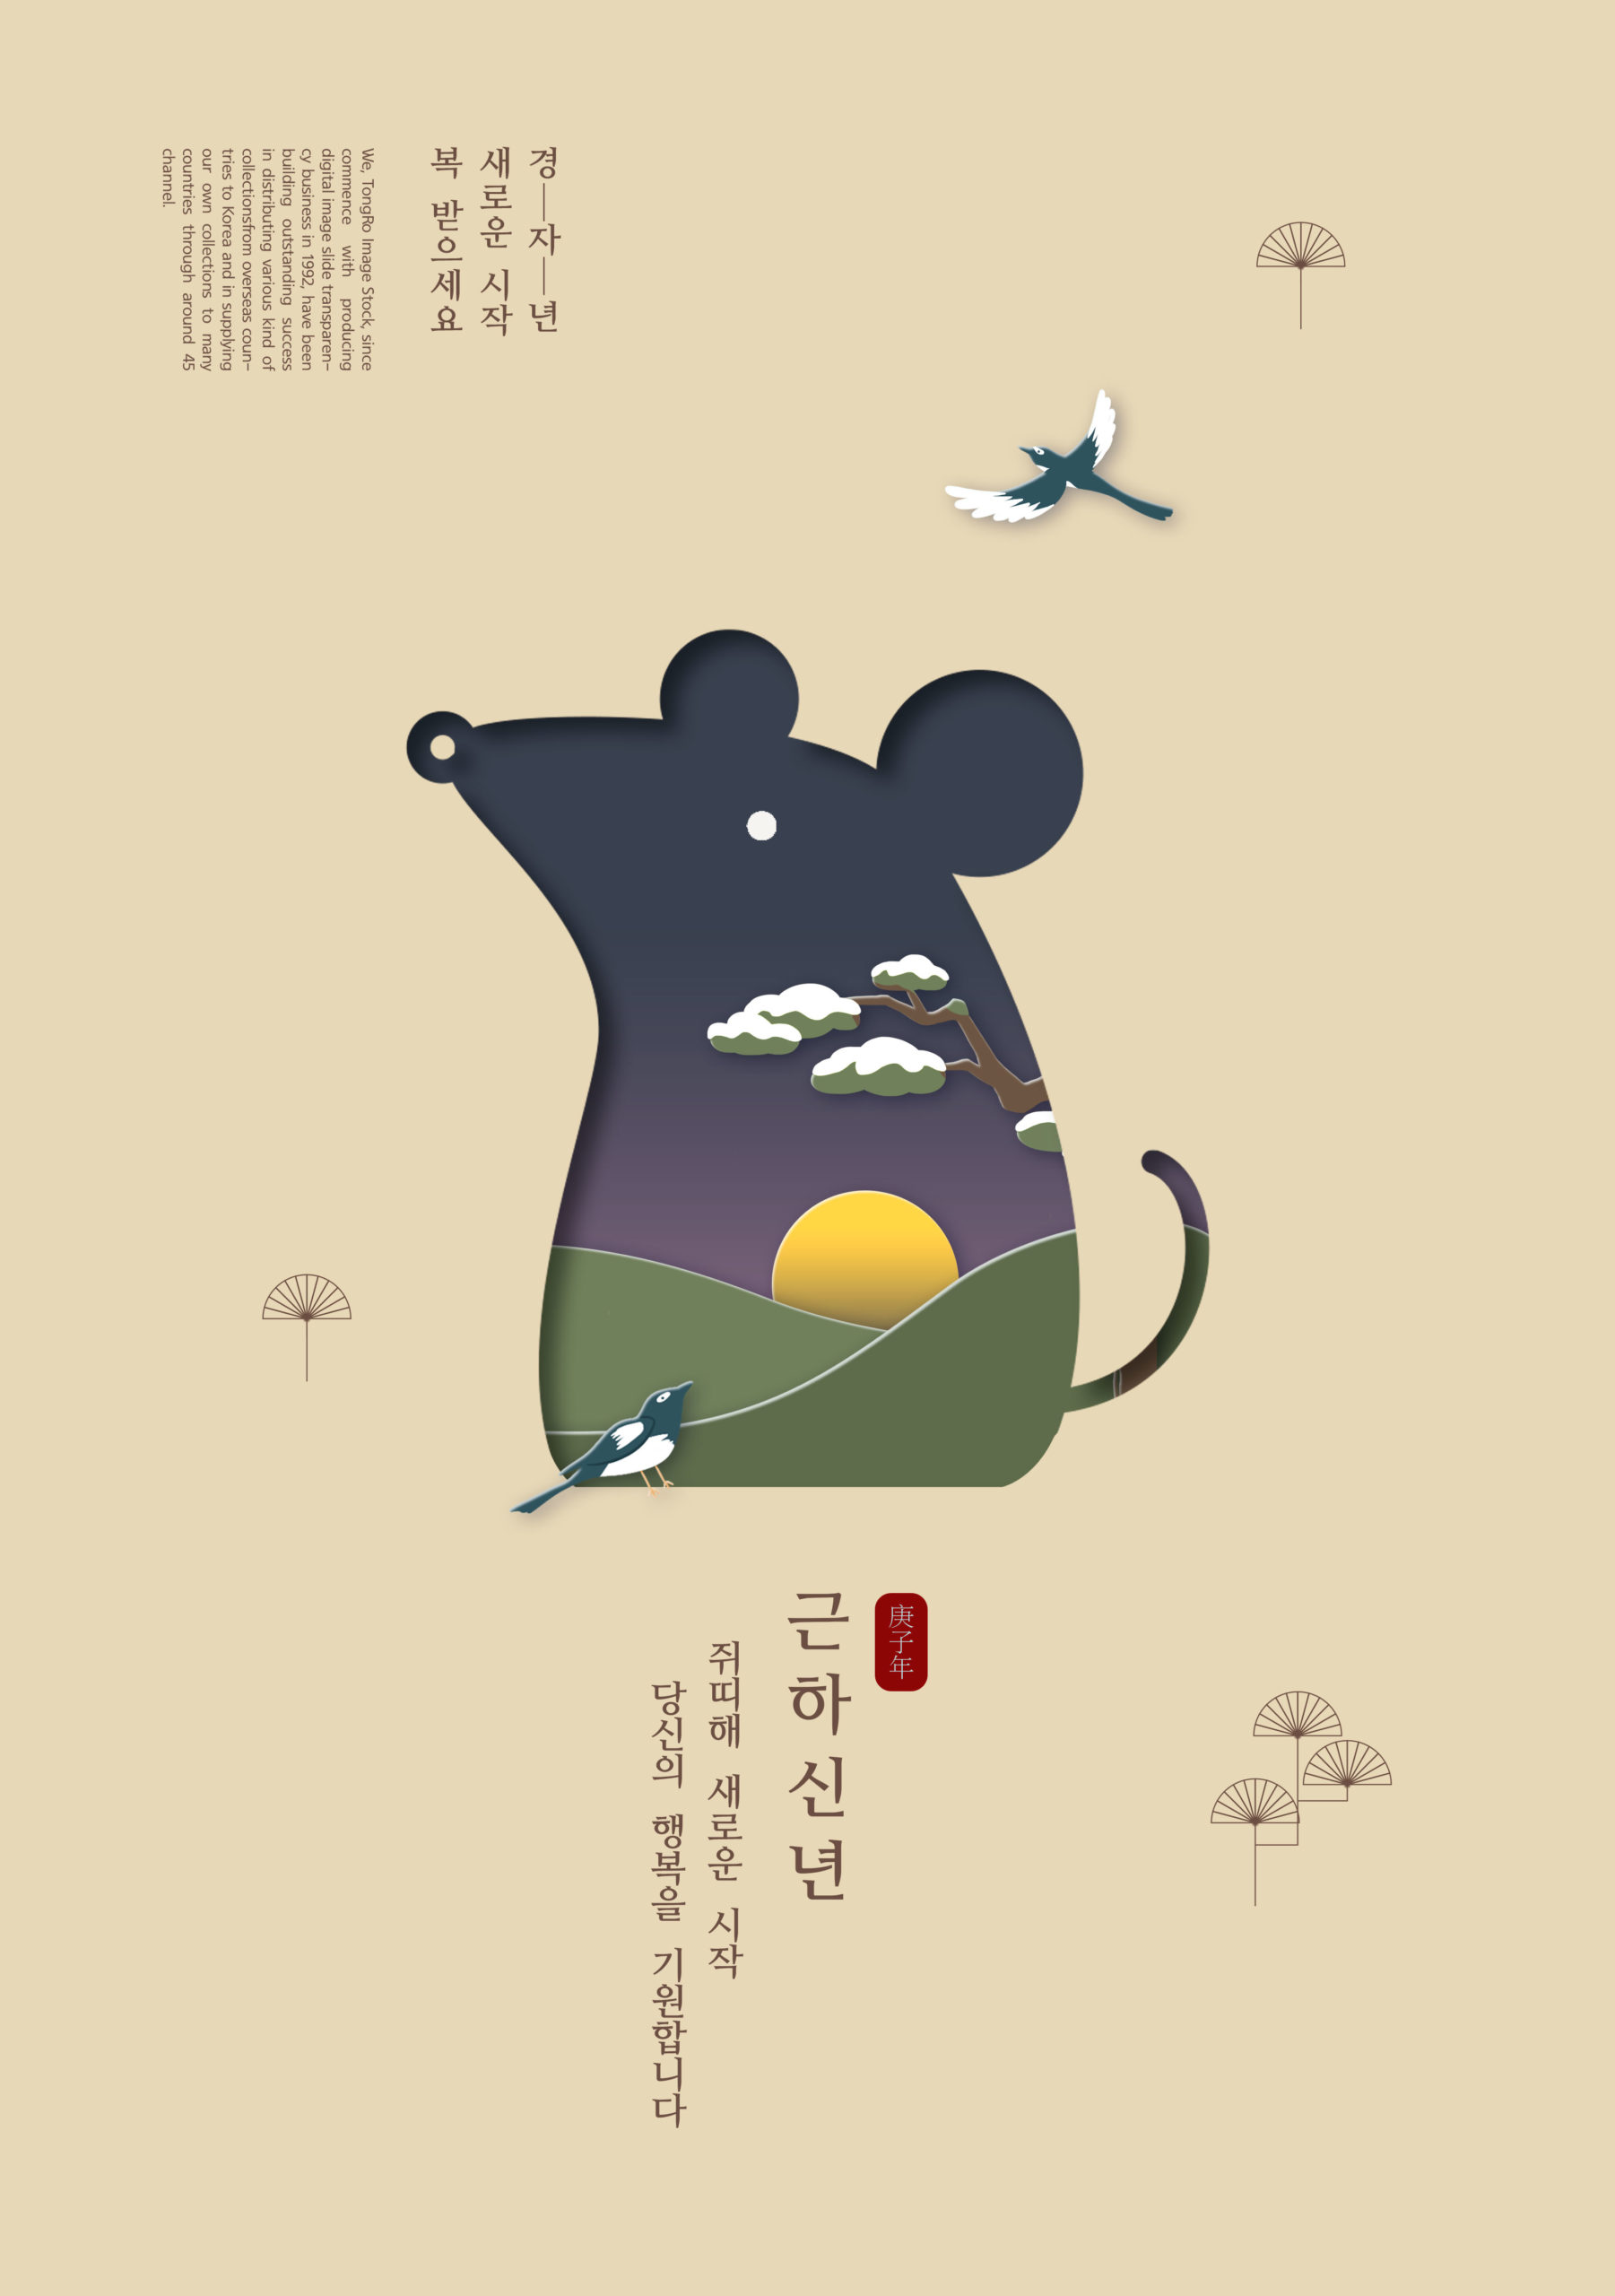 2020鼠年主题韩国元素海报psd素材插图